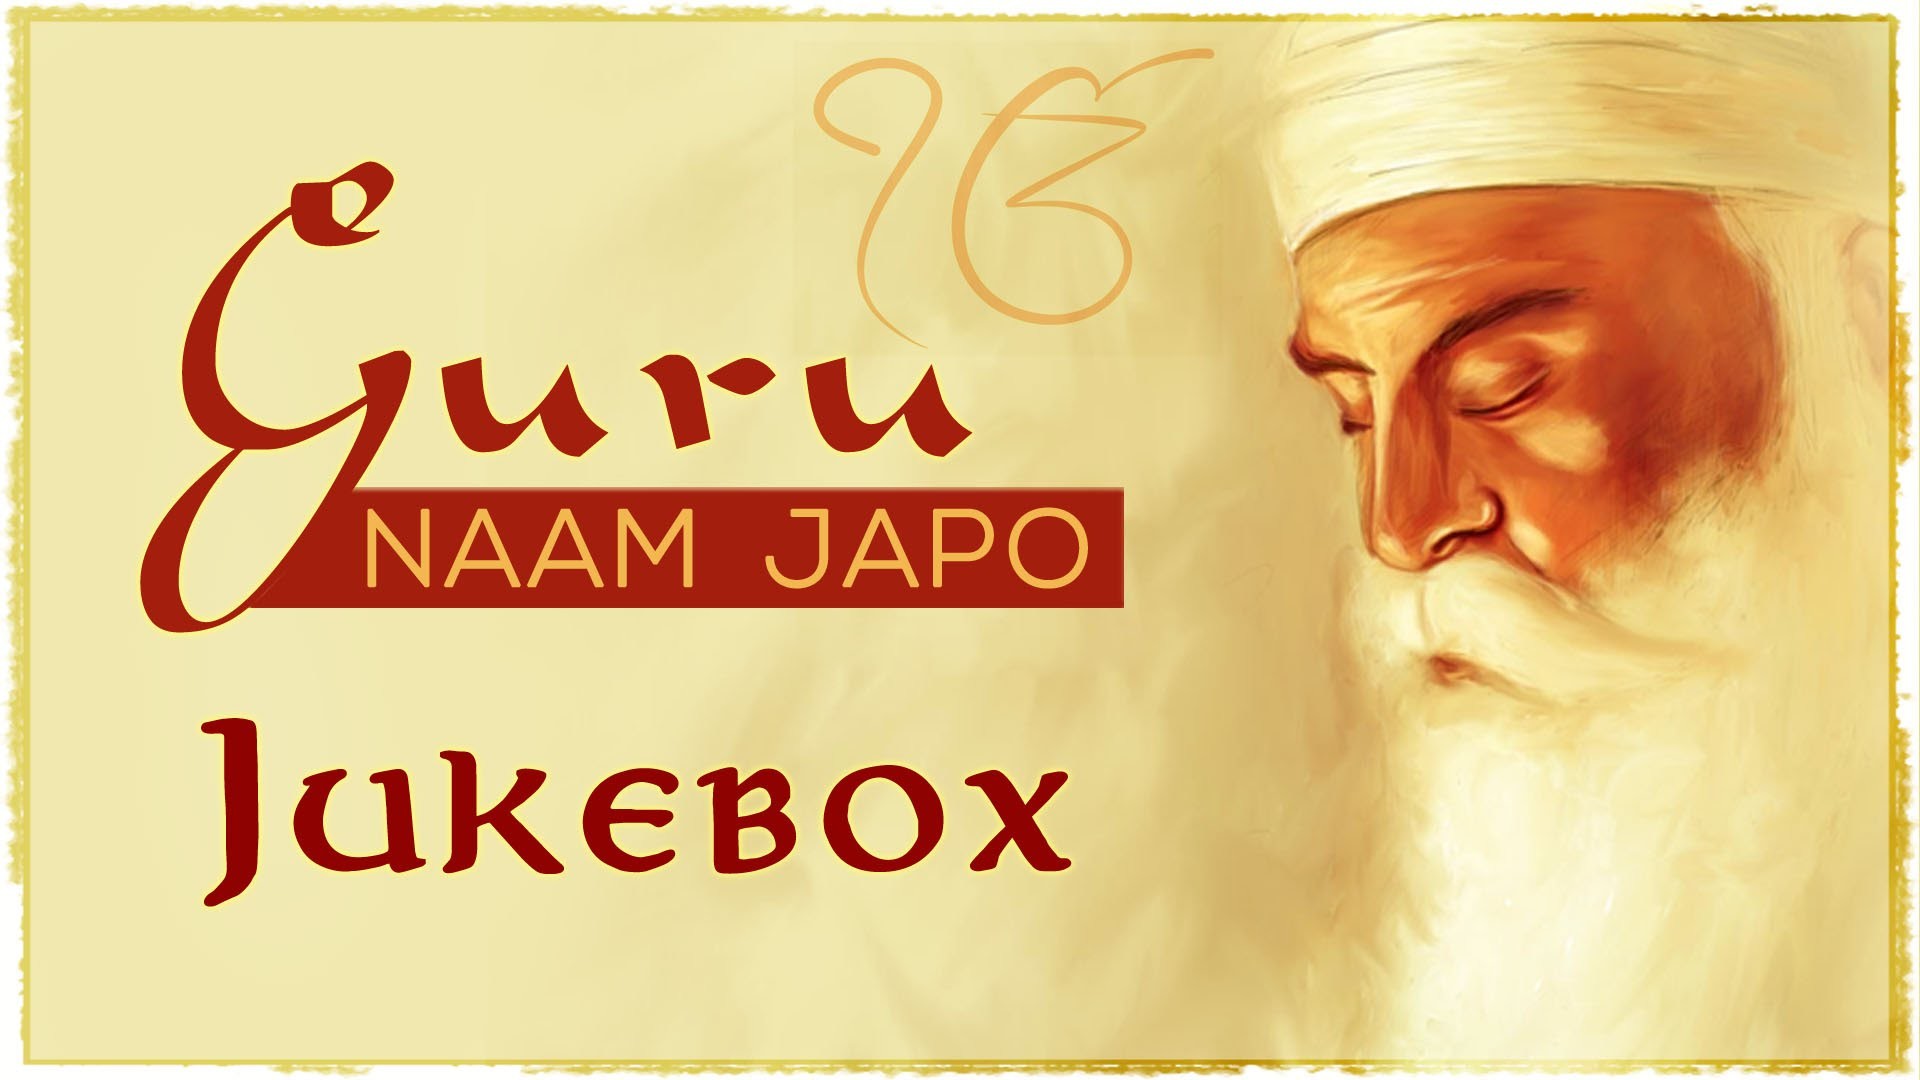 1920x1080, Guru Naam Japo - Guru Nanak Dev Ji Birthday 550 - HD Wallpaper 